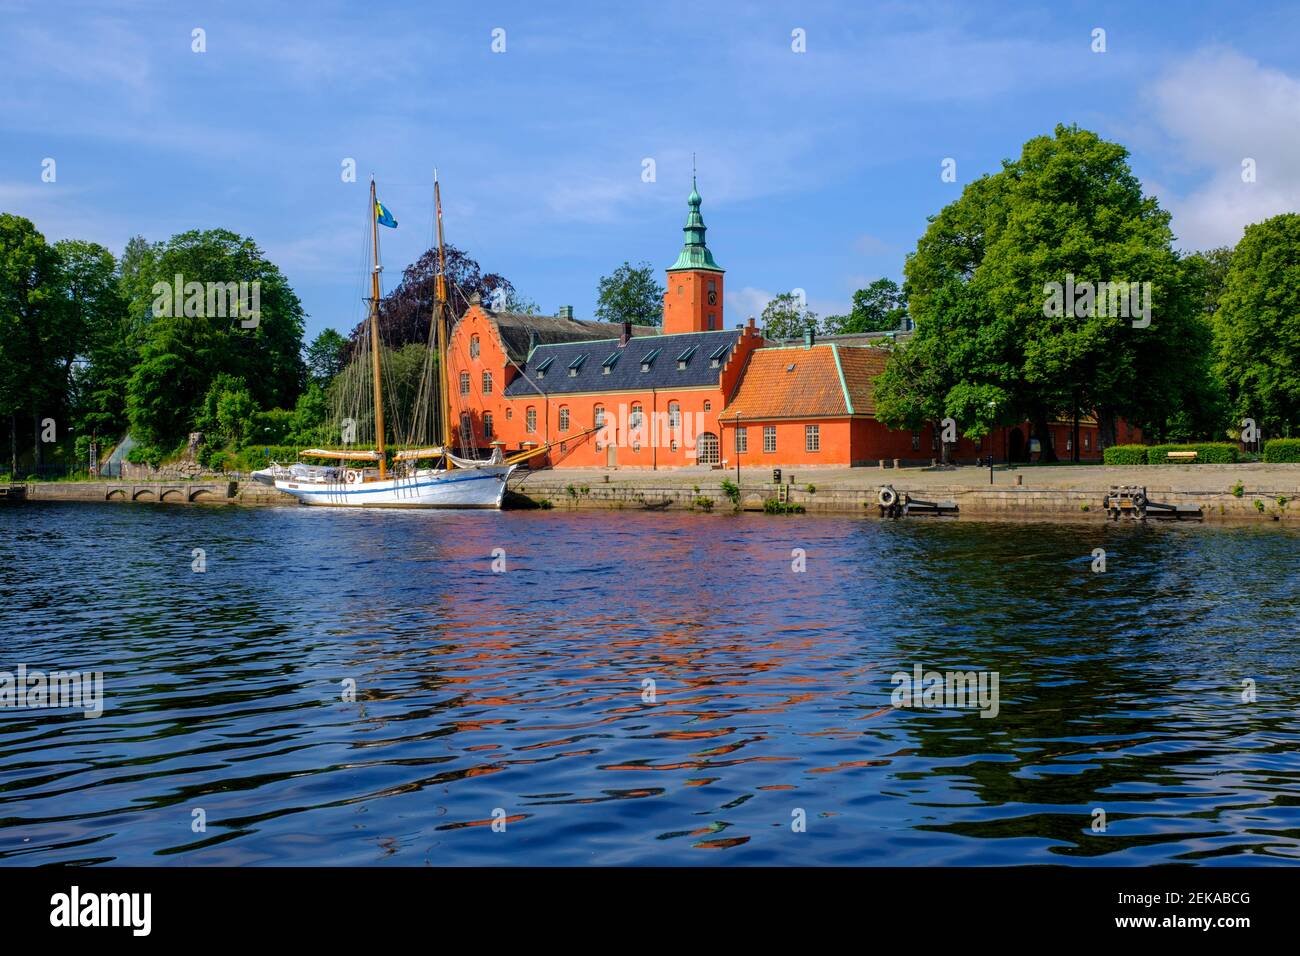 Sweden, Halland County, Halmstad, HSwMS Najaden moored in front of Halmstad Castle Stock Photo